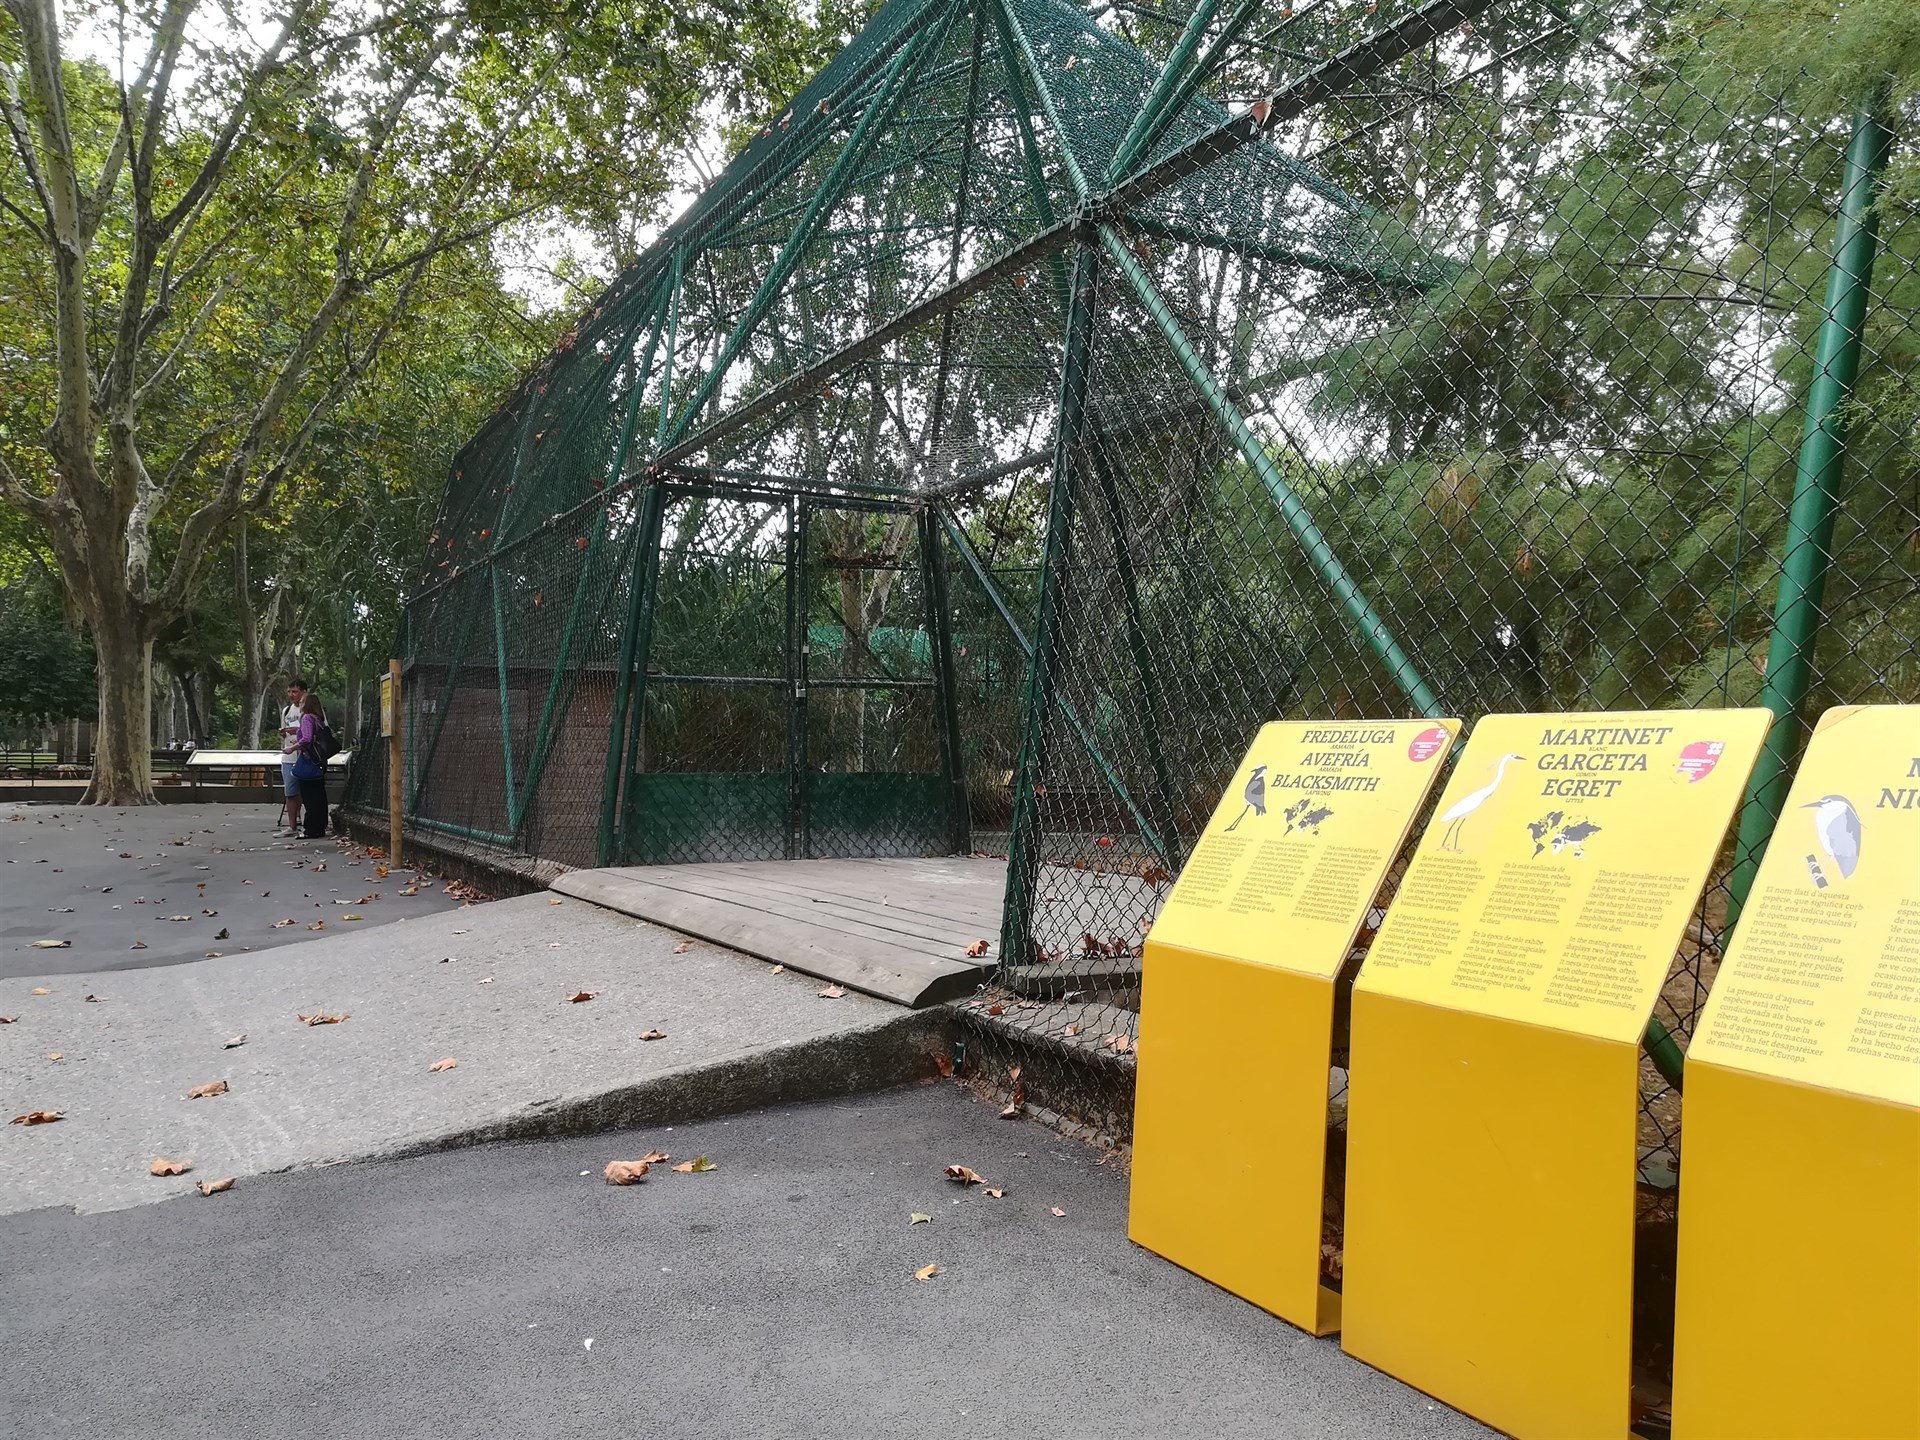 Obren una gàbia del Zoo de Barcelona i s'escapen disset ocells